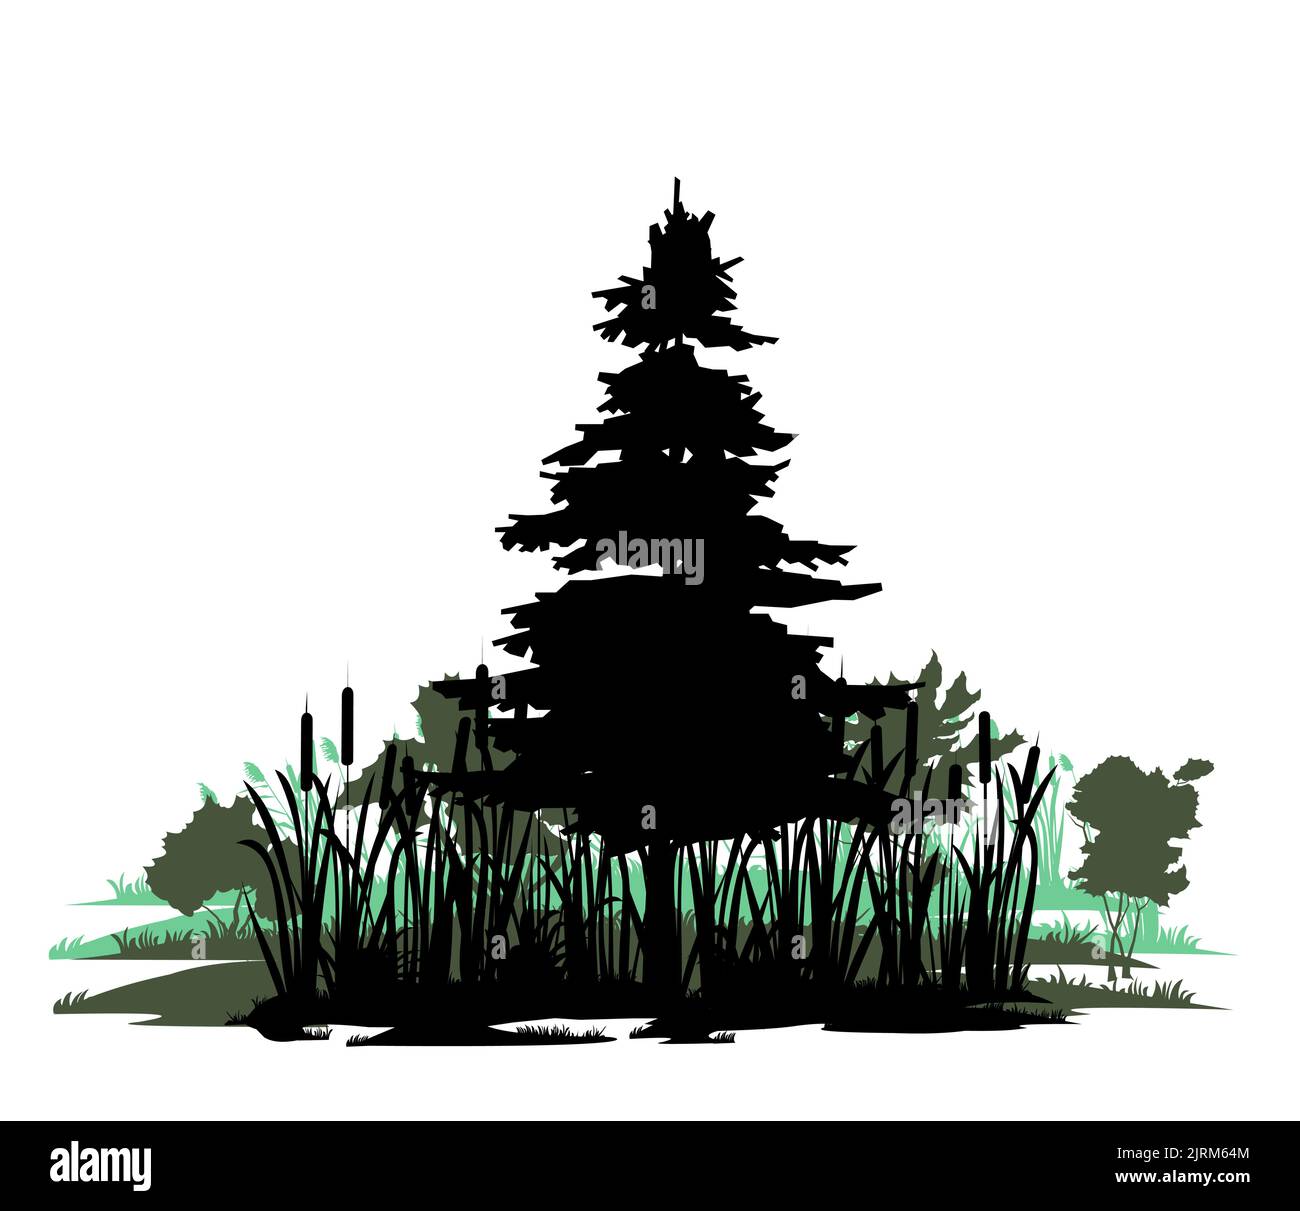 Baum im Sumpf. Nadelpflanze Kiefer. Landschaft mit Bäumen und Gras. Silhouettenbild. Isoliert auf weißem Hintergrund. Vektor Stock Vektor